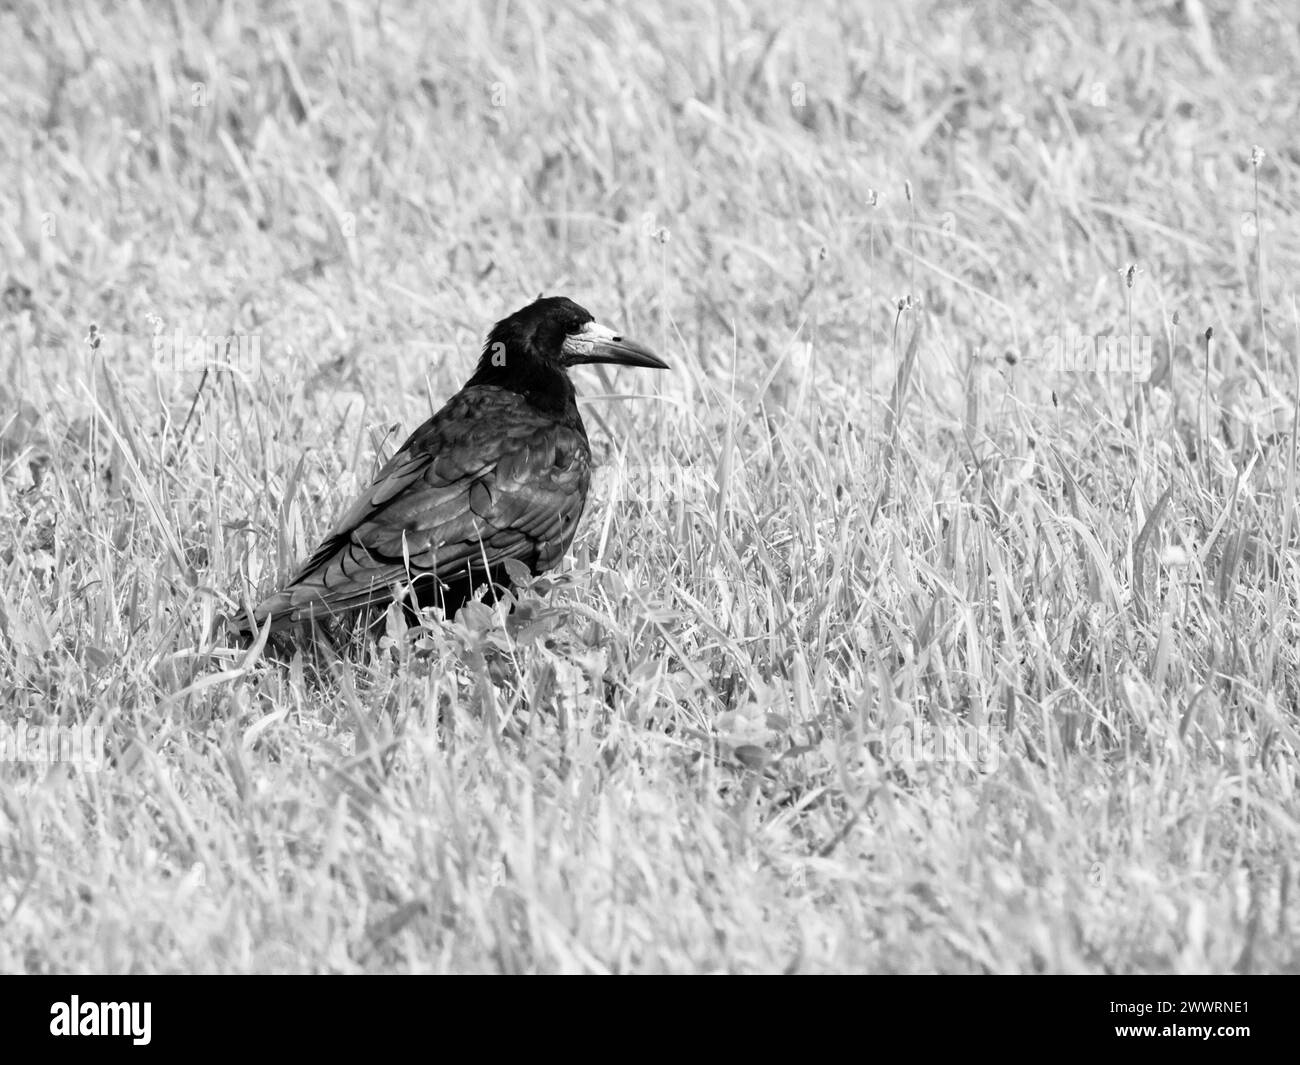 Corvo nero seduto nell'erba. Immagine in bianco e nero. Foto Stock